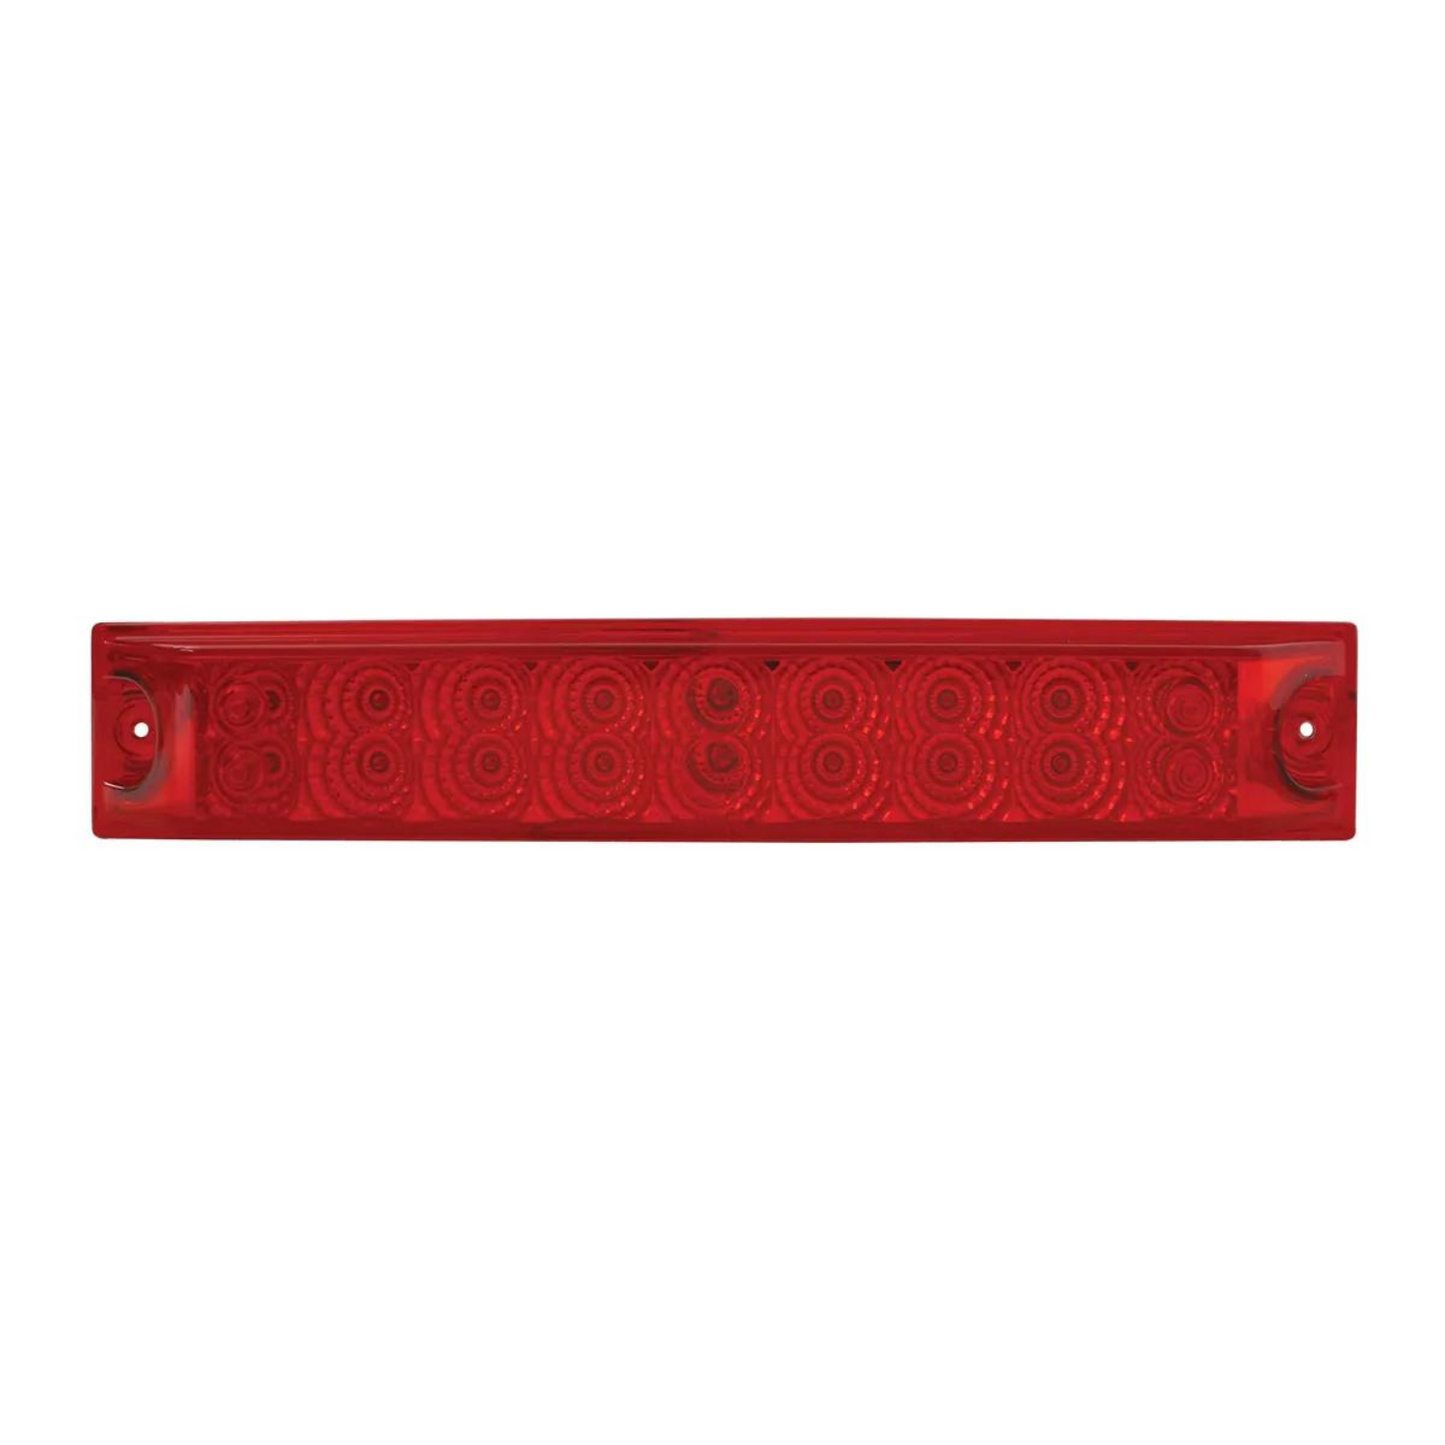 Spyder 18 LED Light Bar in Red